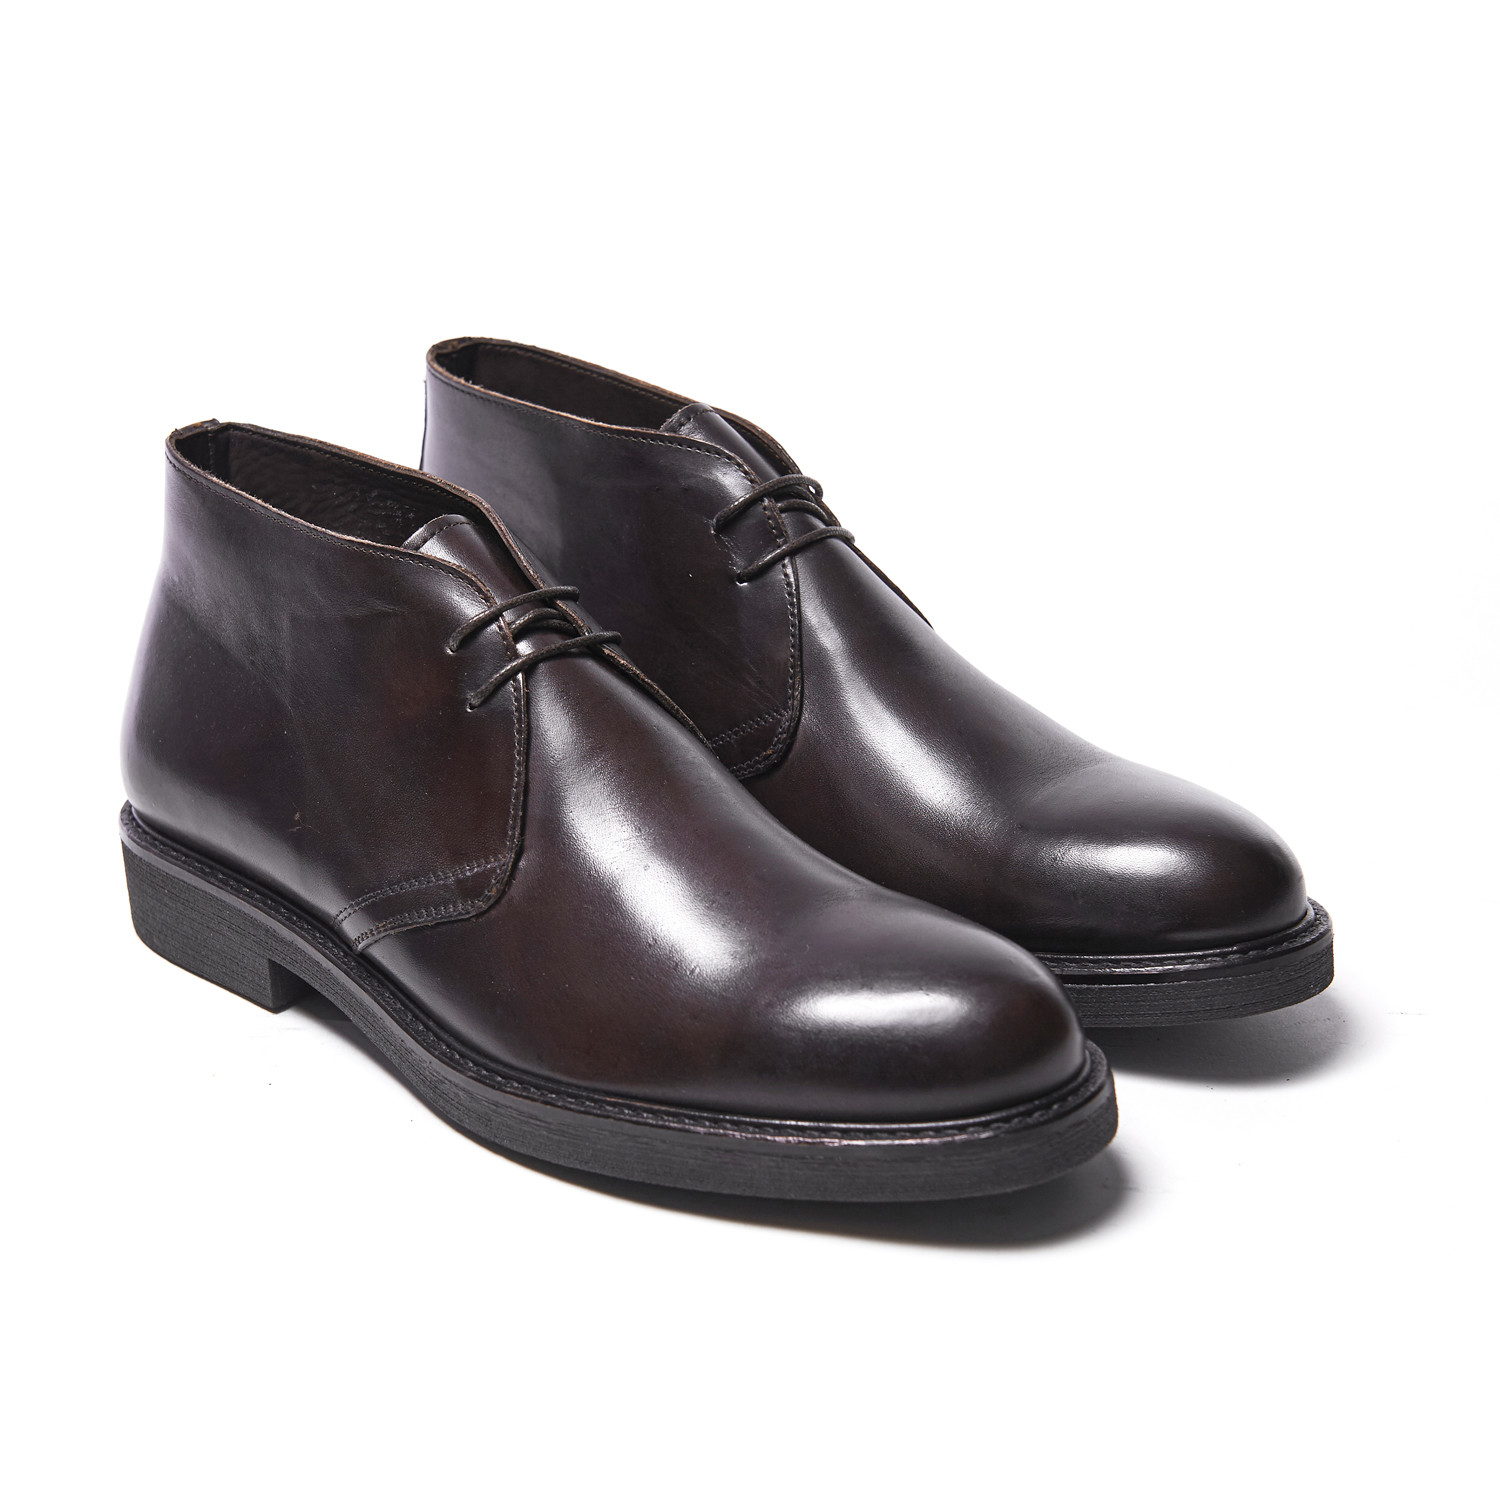 Plain Chukka Boot // Dark Brown (Euro: 40) - British Passport Shoes ...